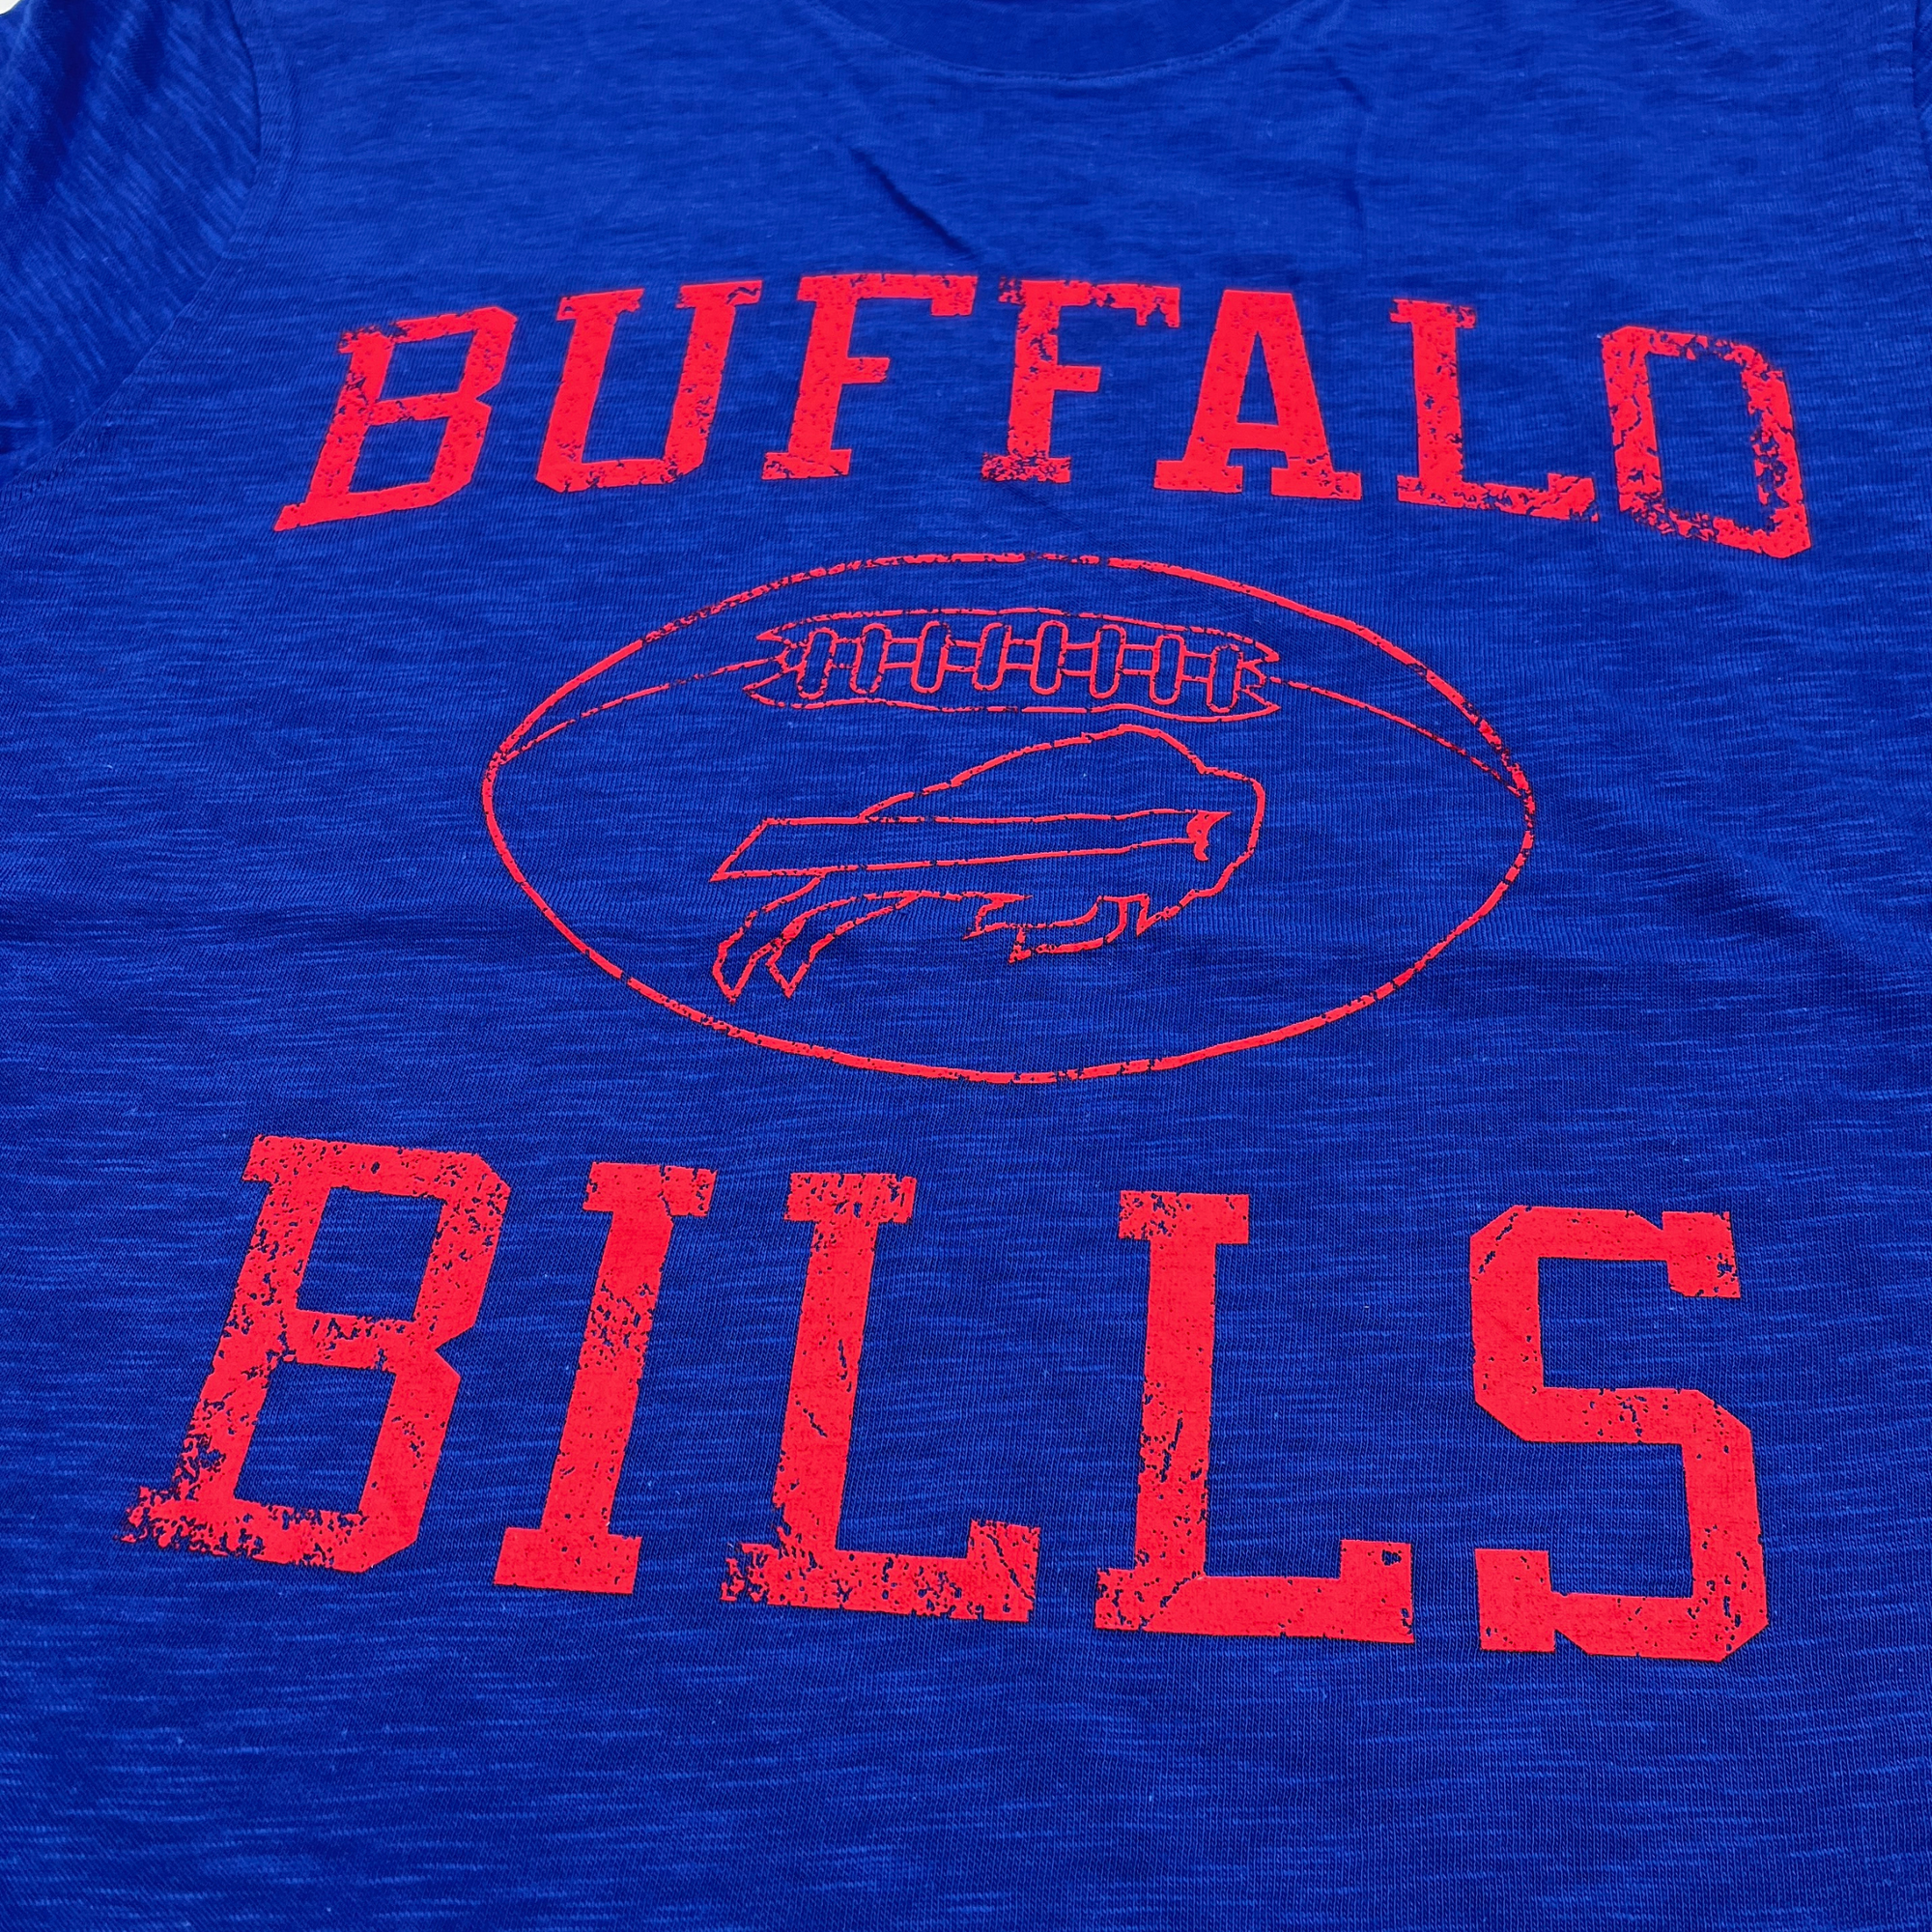 Buffalo Bills Royal Touchdown Distressed Starter Short Sleeve Shirt